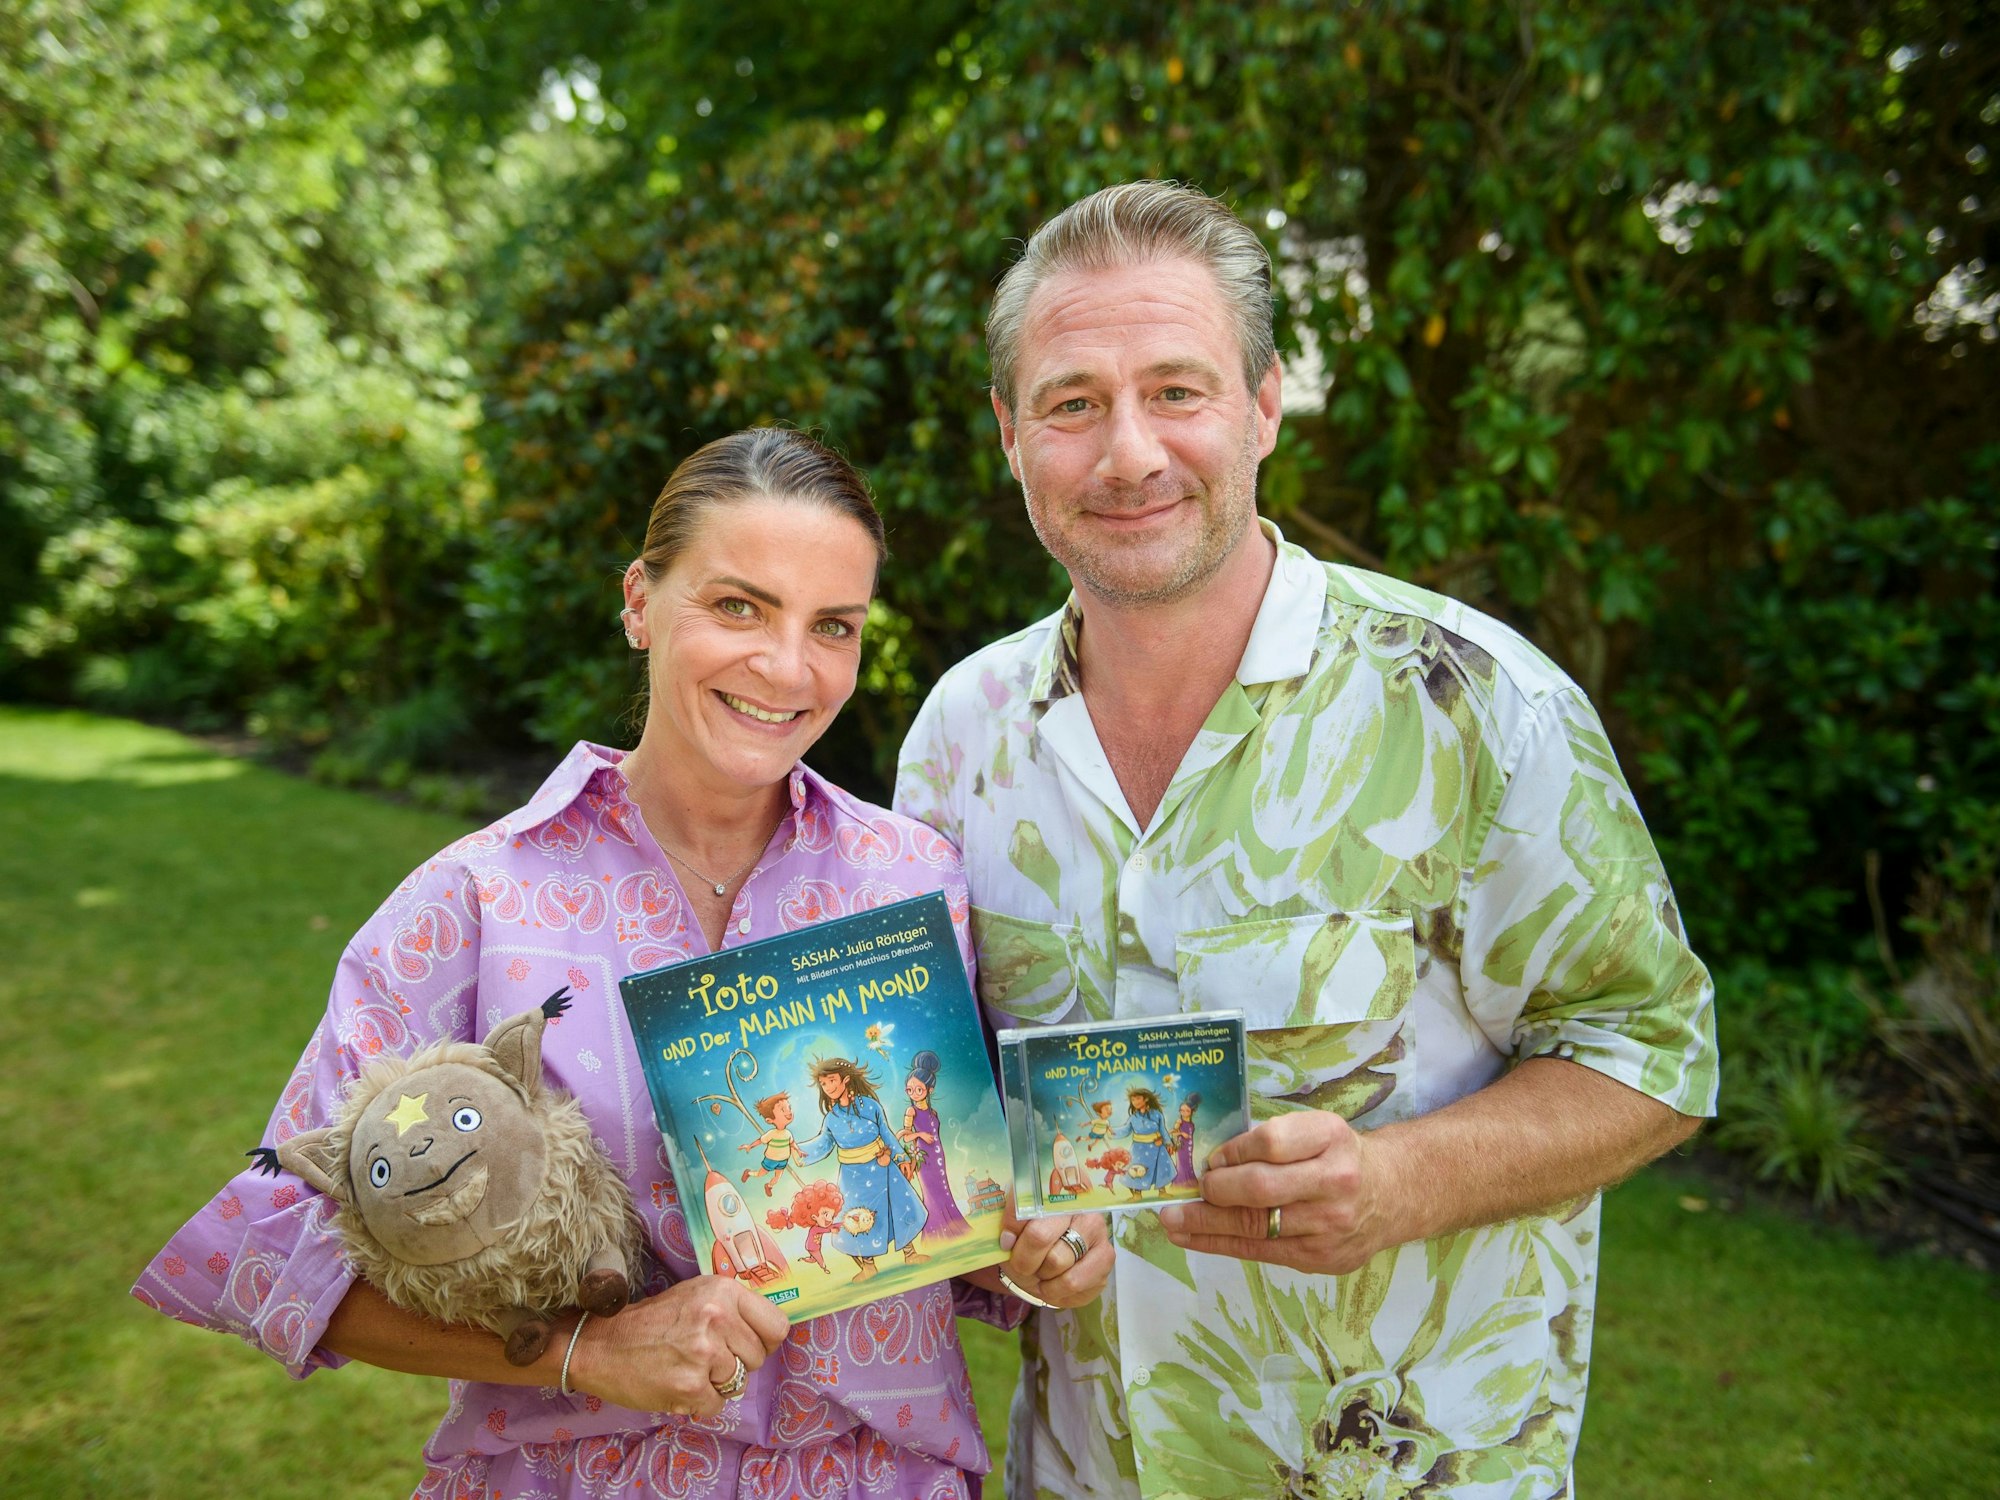 Sasha und seine Frau Julia Röntgen präsentieren das Kinderbuch und das Album zu „Toto und der Mann im Mond“ im Garten ihres Grundstücks.